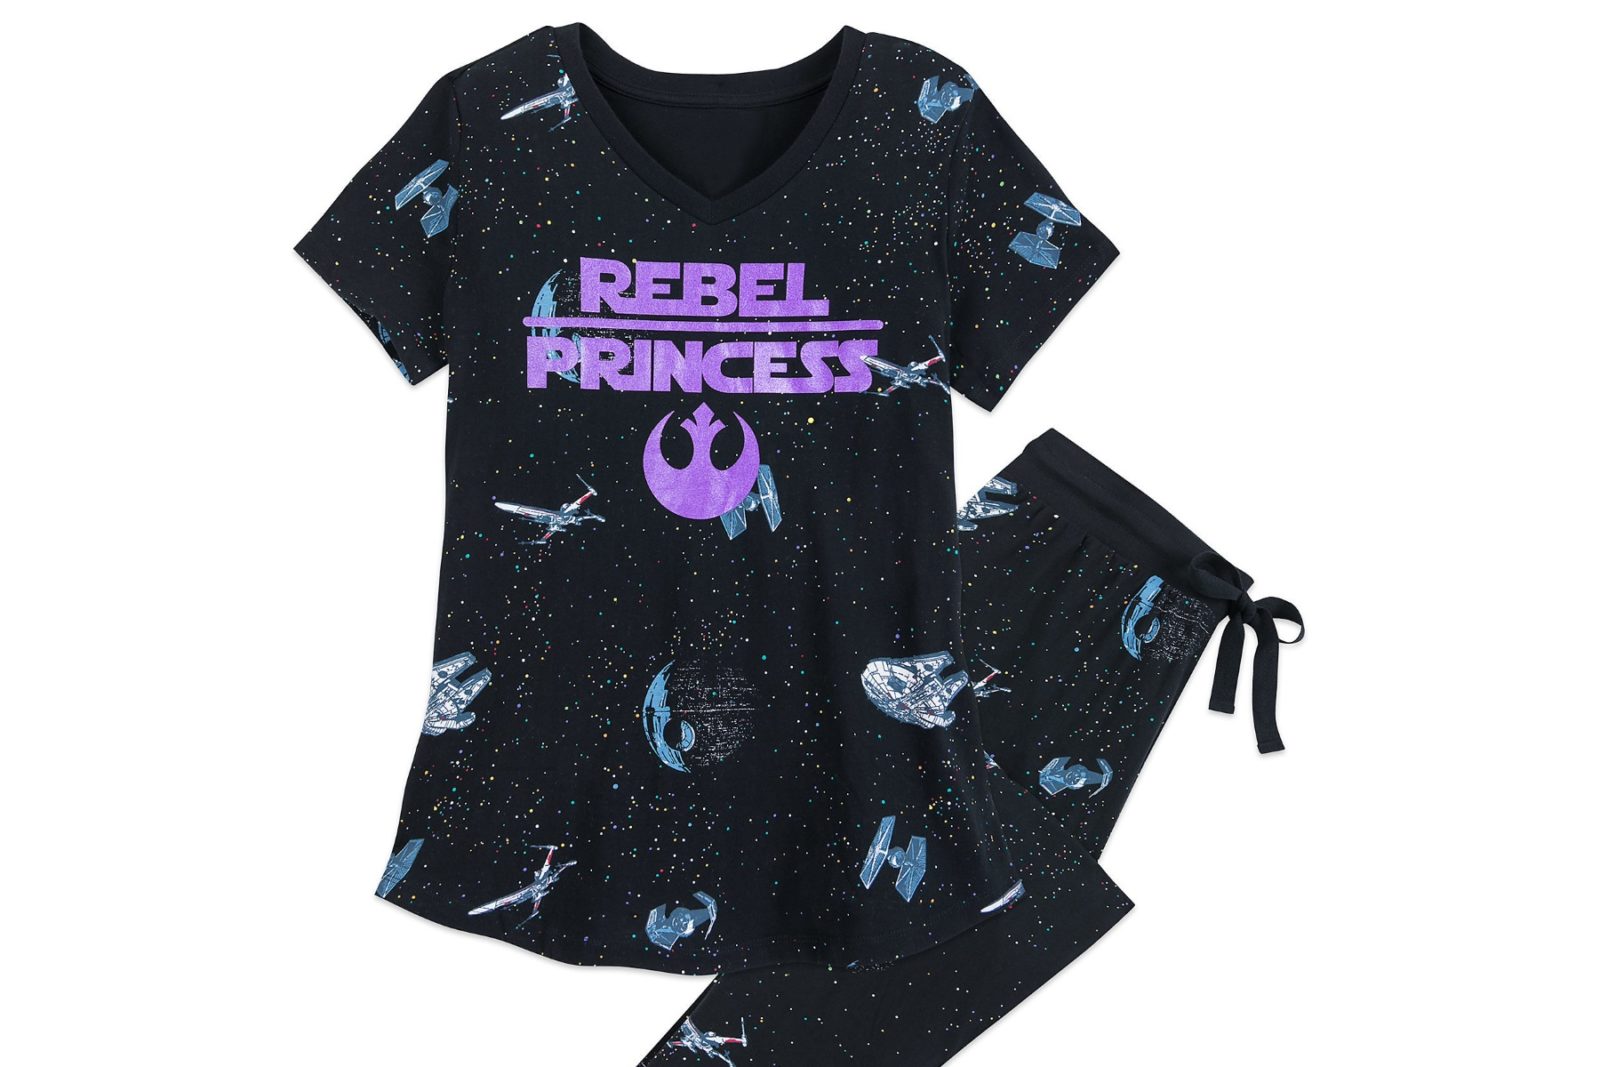 Rebel Princess Sleepwear Set at Shop Disney